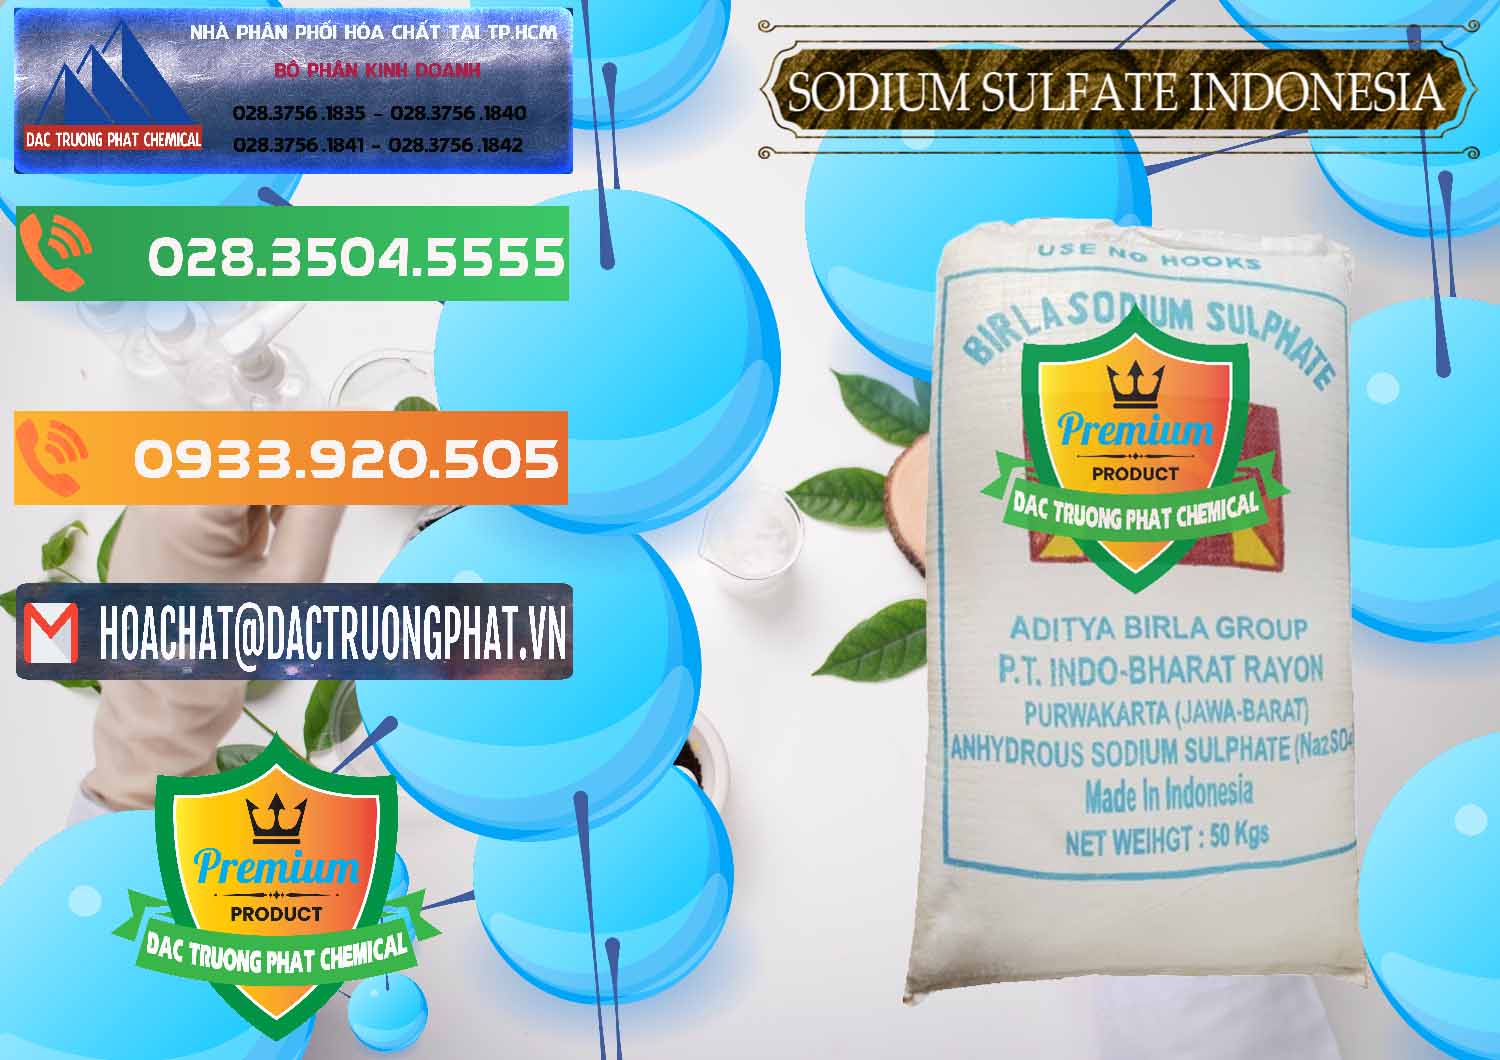 Cty chuyên nhập khẩu và bán Sodium Sulphate - Muối Sunfat Na2SO4 99% Indonesia - 0459 - Nơi phân phối - nhập khẩu hóa chất tại TP.HCM - hoachatxulynuoc.com.vn